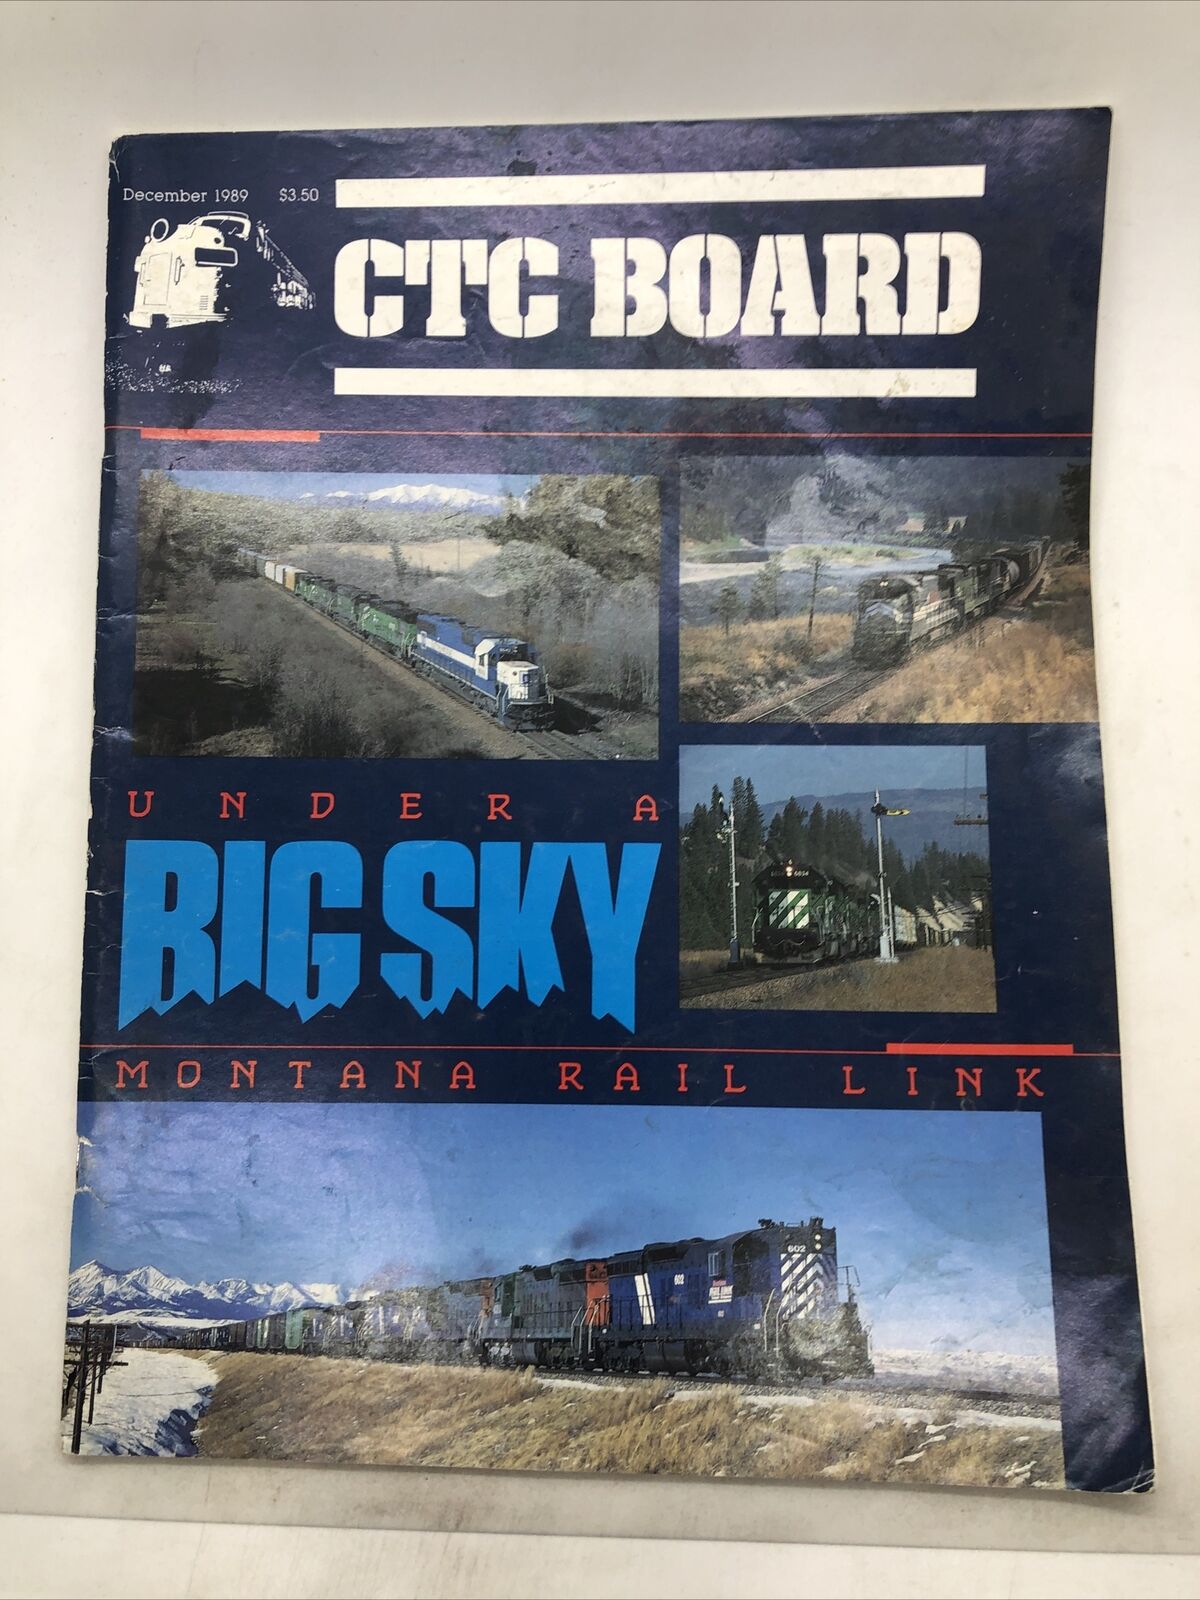 CTC Board Railroad Magazine - December 1989